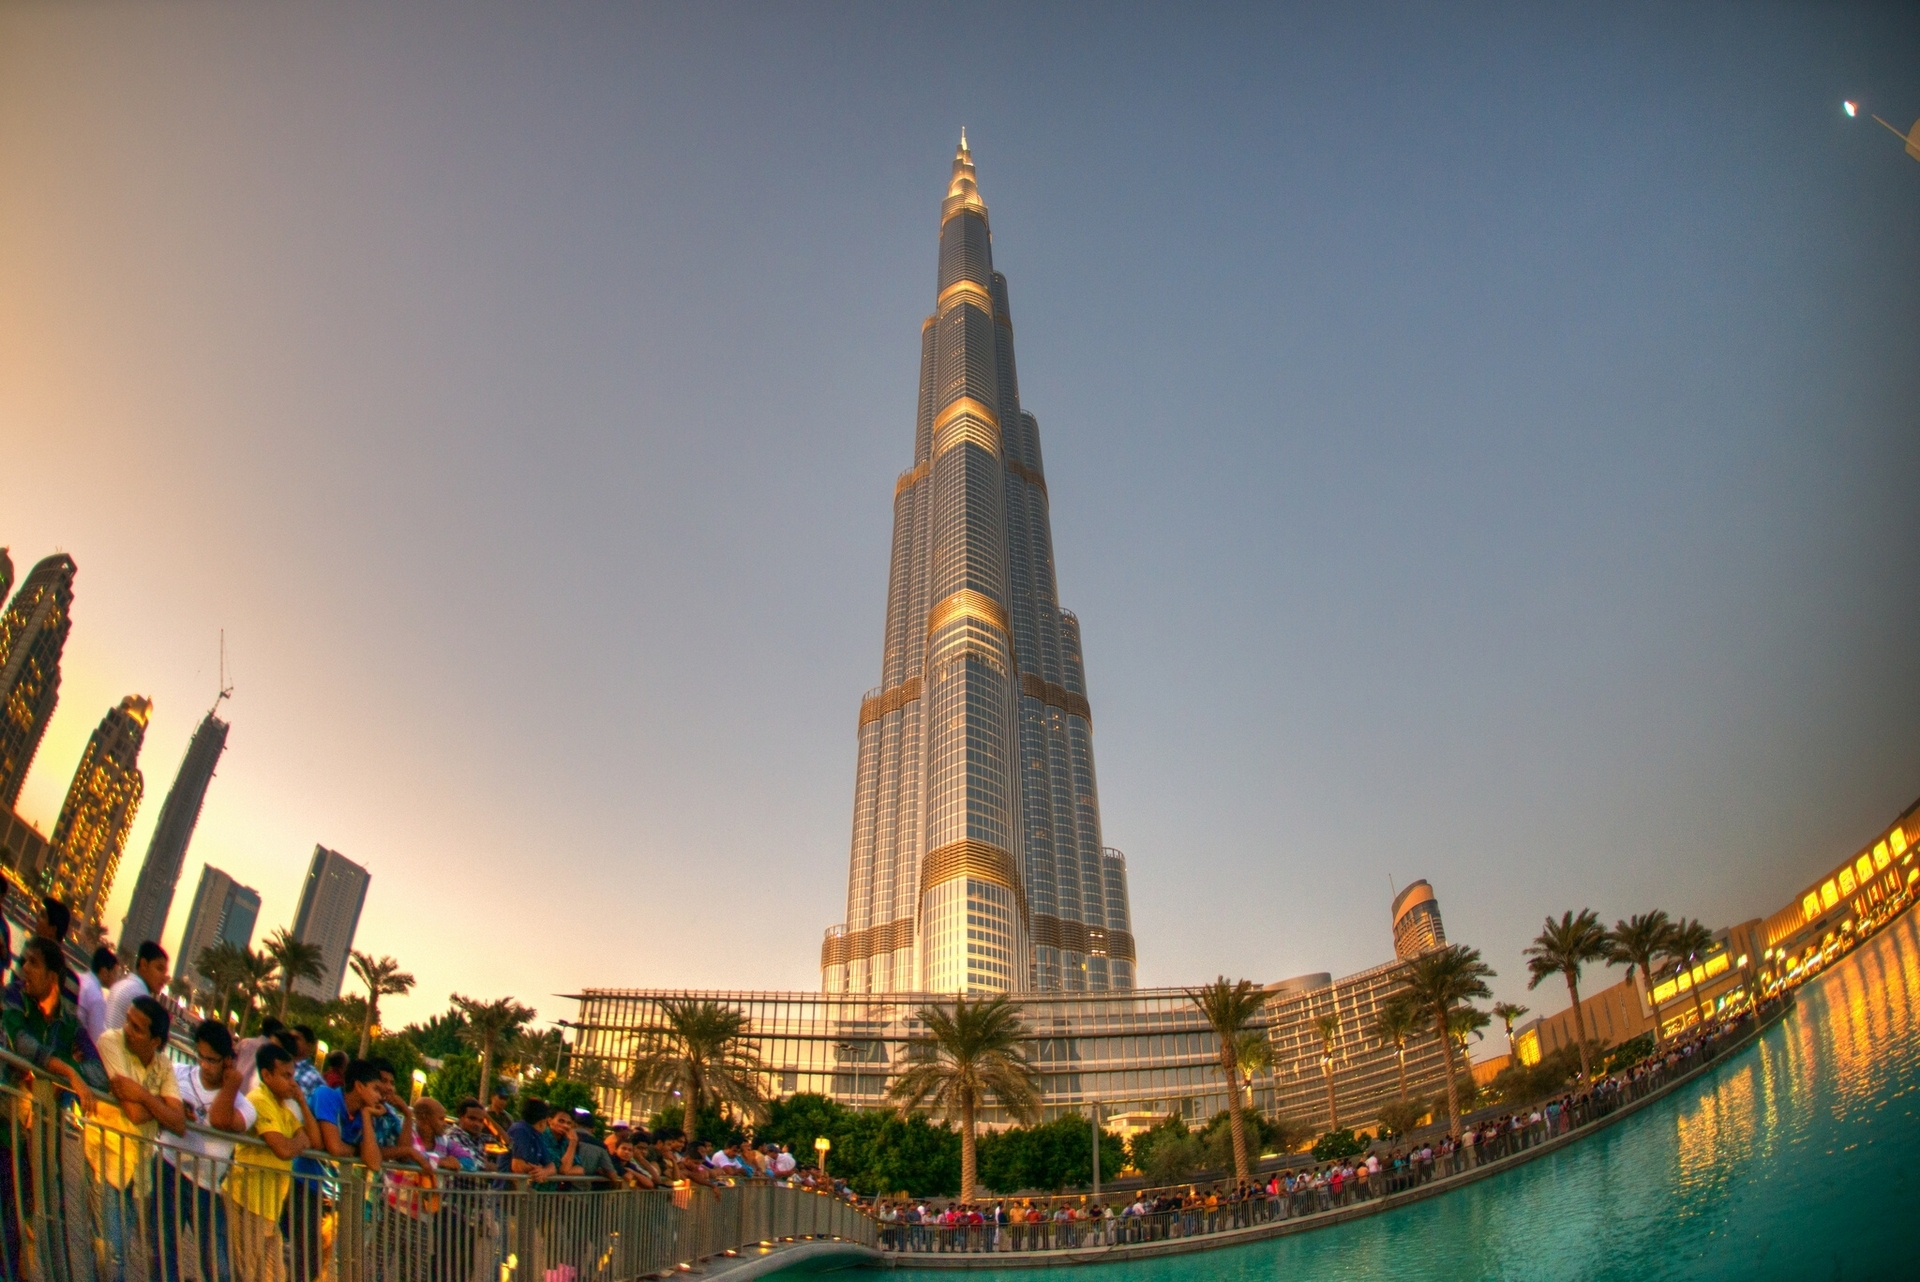 Burj Khalifa Hd Wallpaper 1920x1080 Download